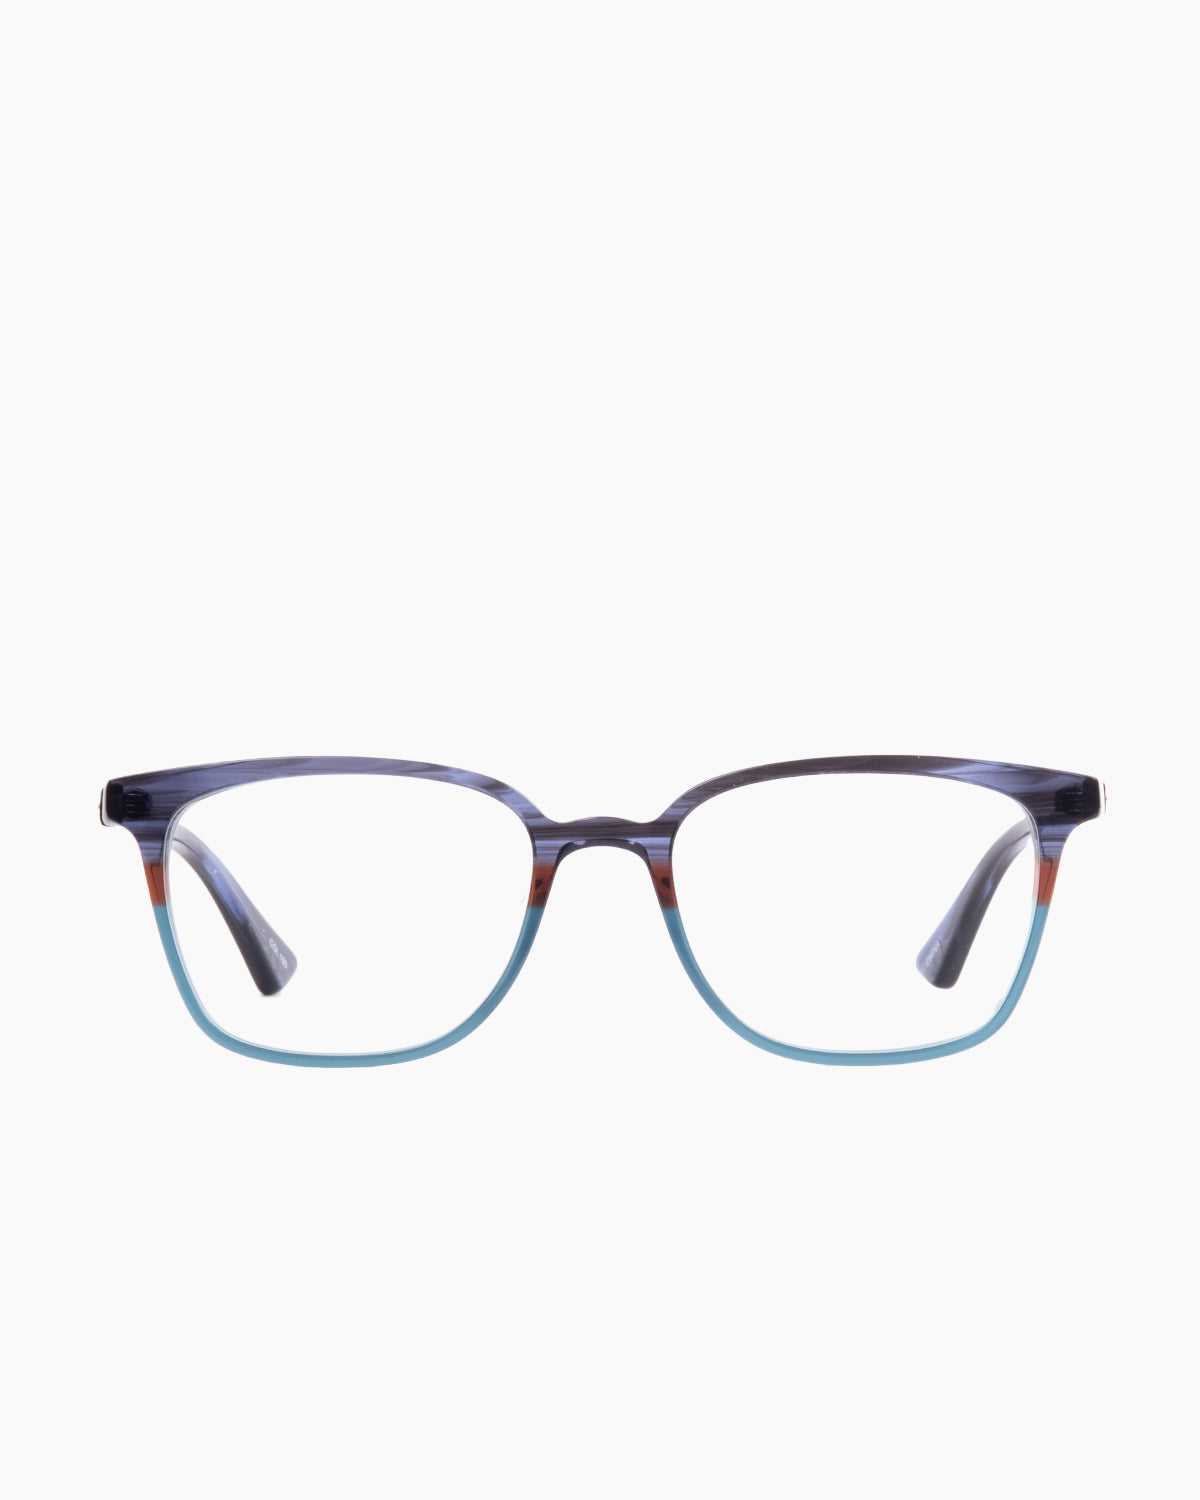 Evolve - Oliver - 150 | glasses bar:  Marie-Sophie Dion